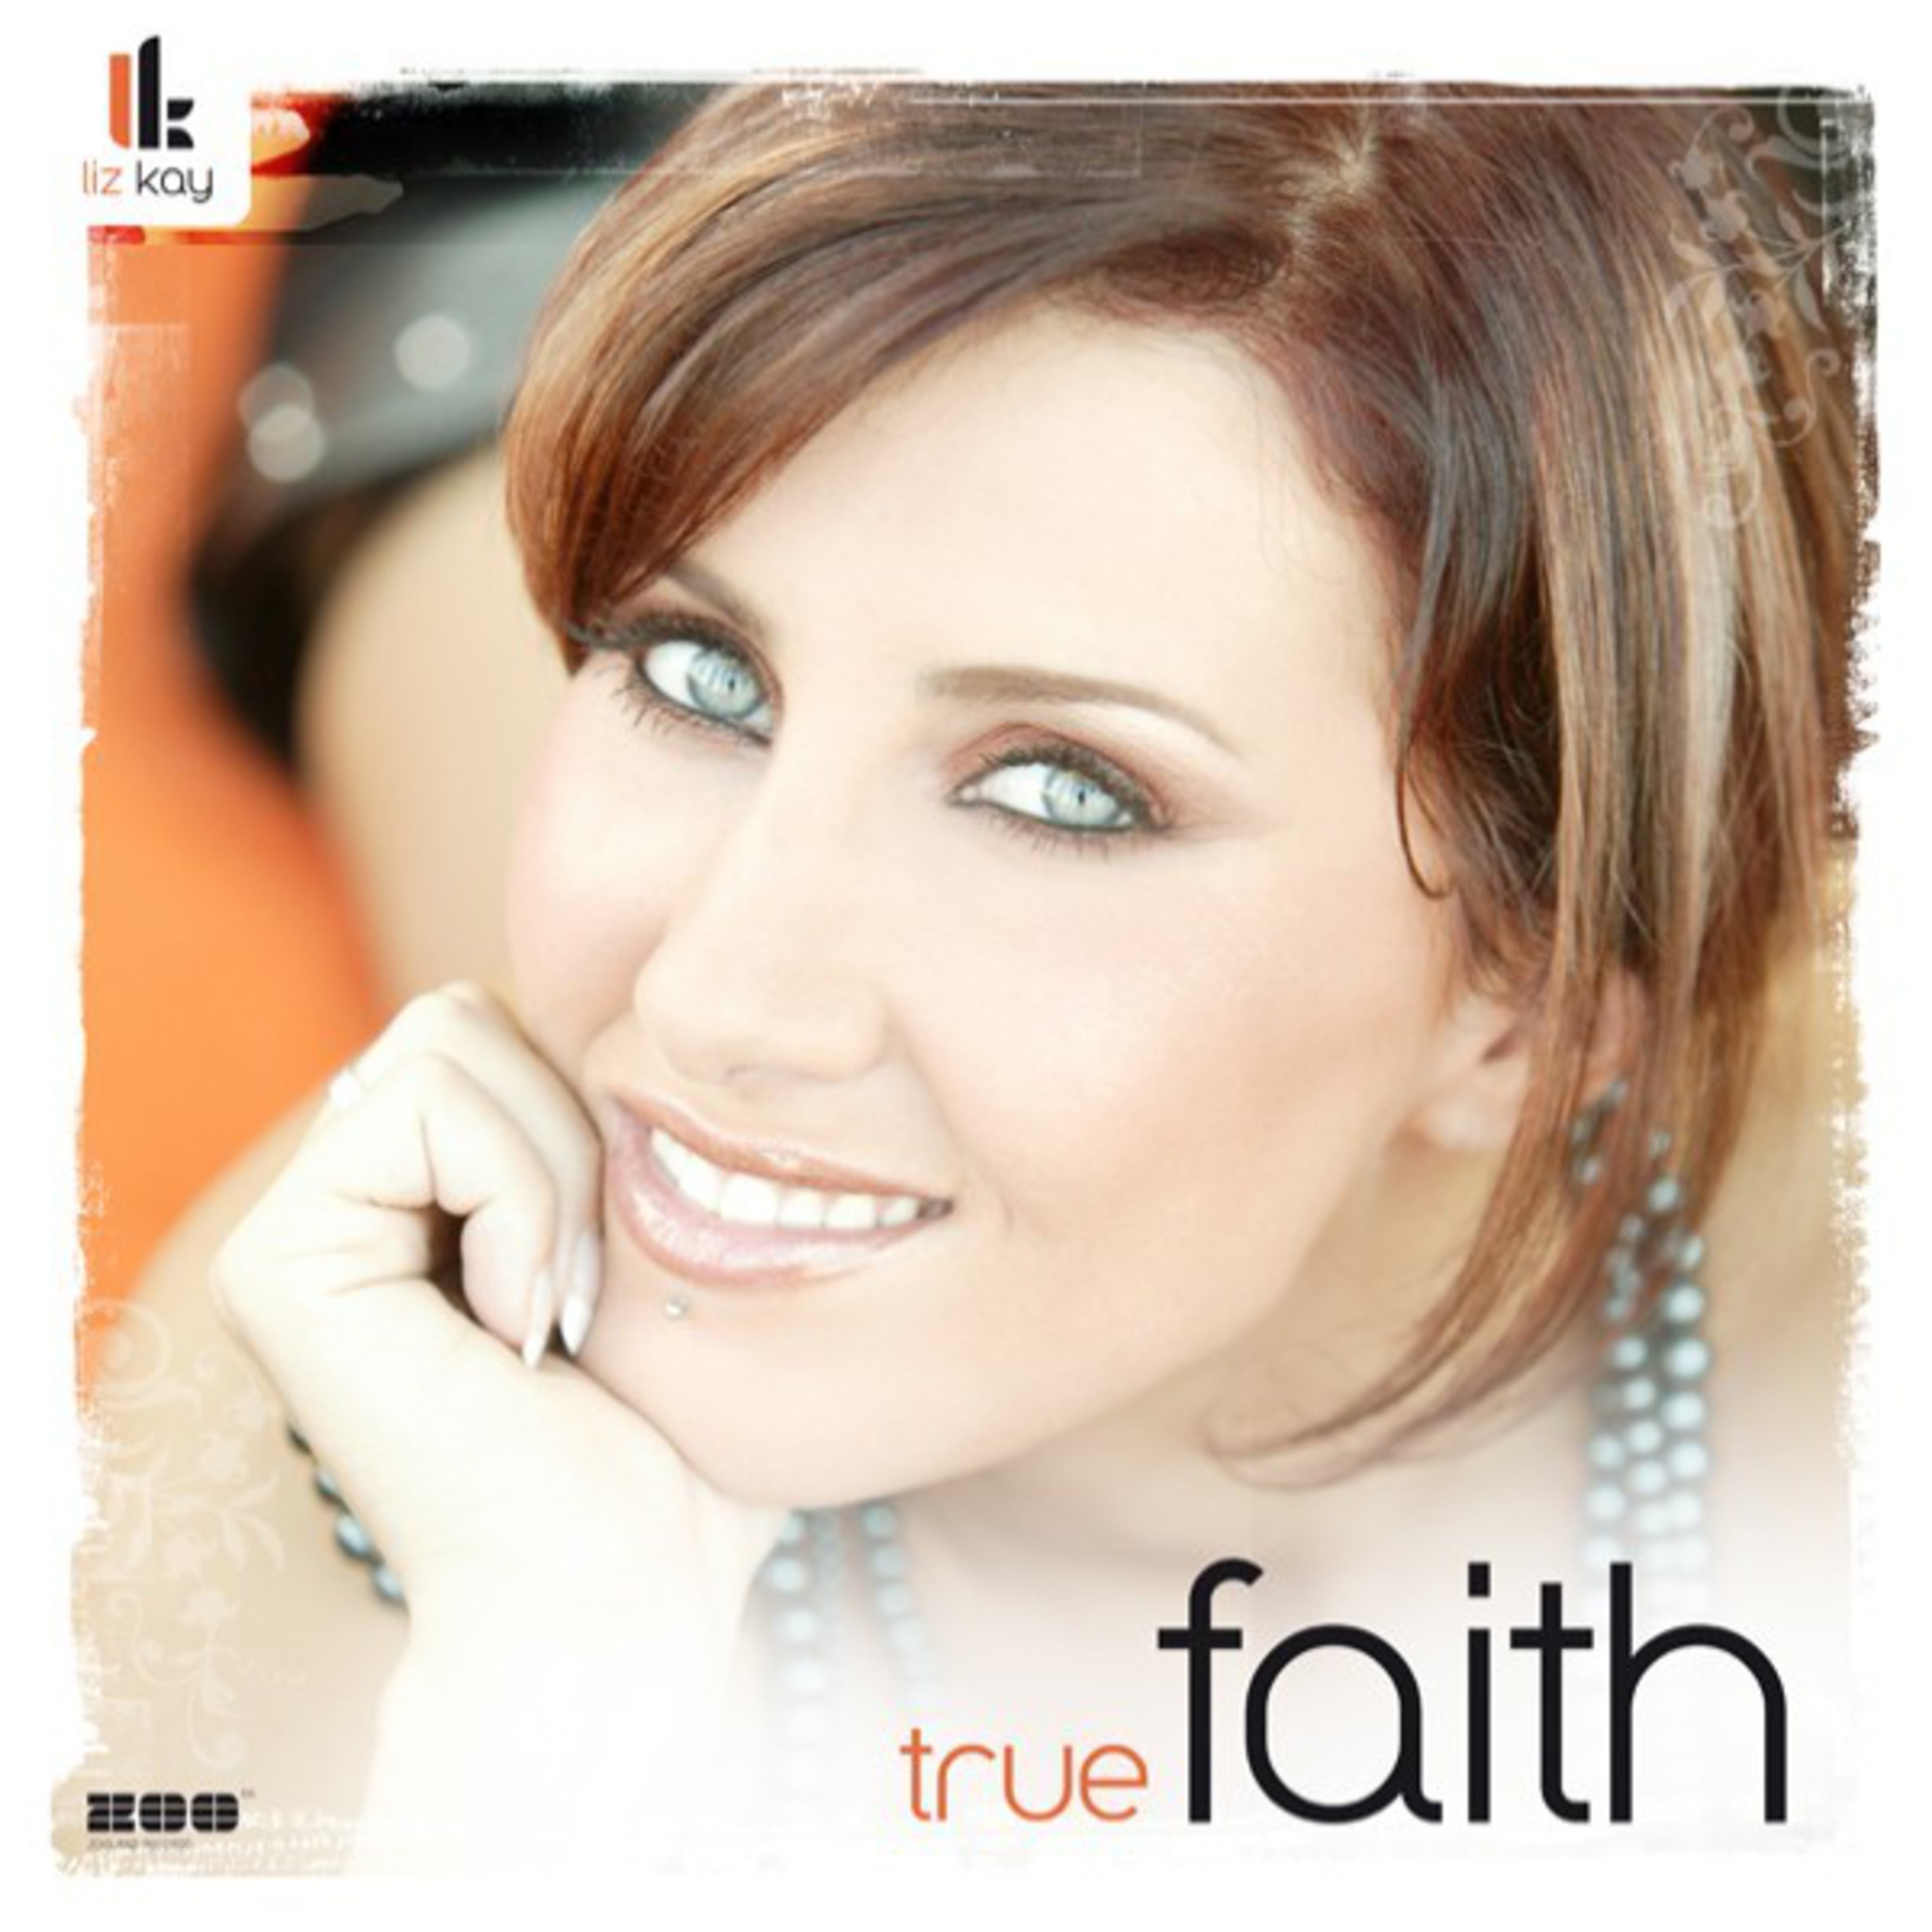 True Faith (Digital Dog dub edit 12)